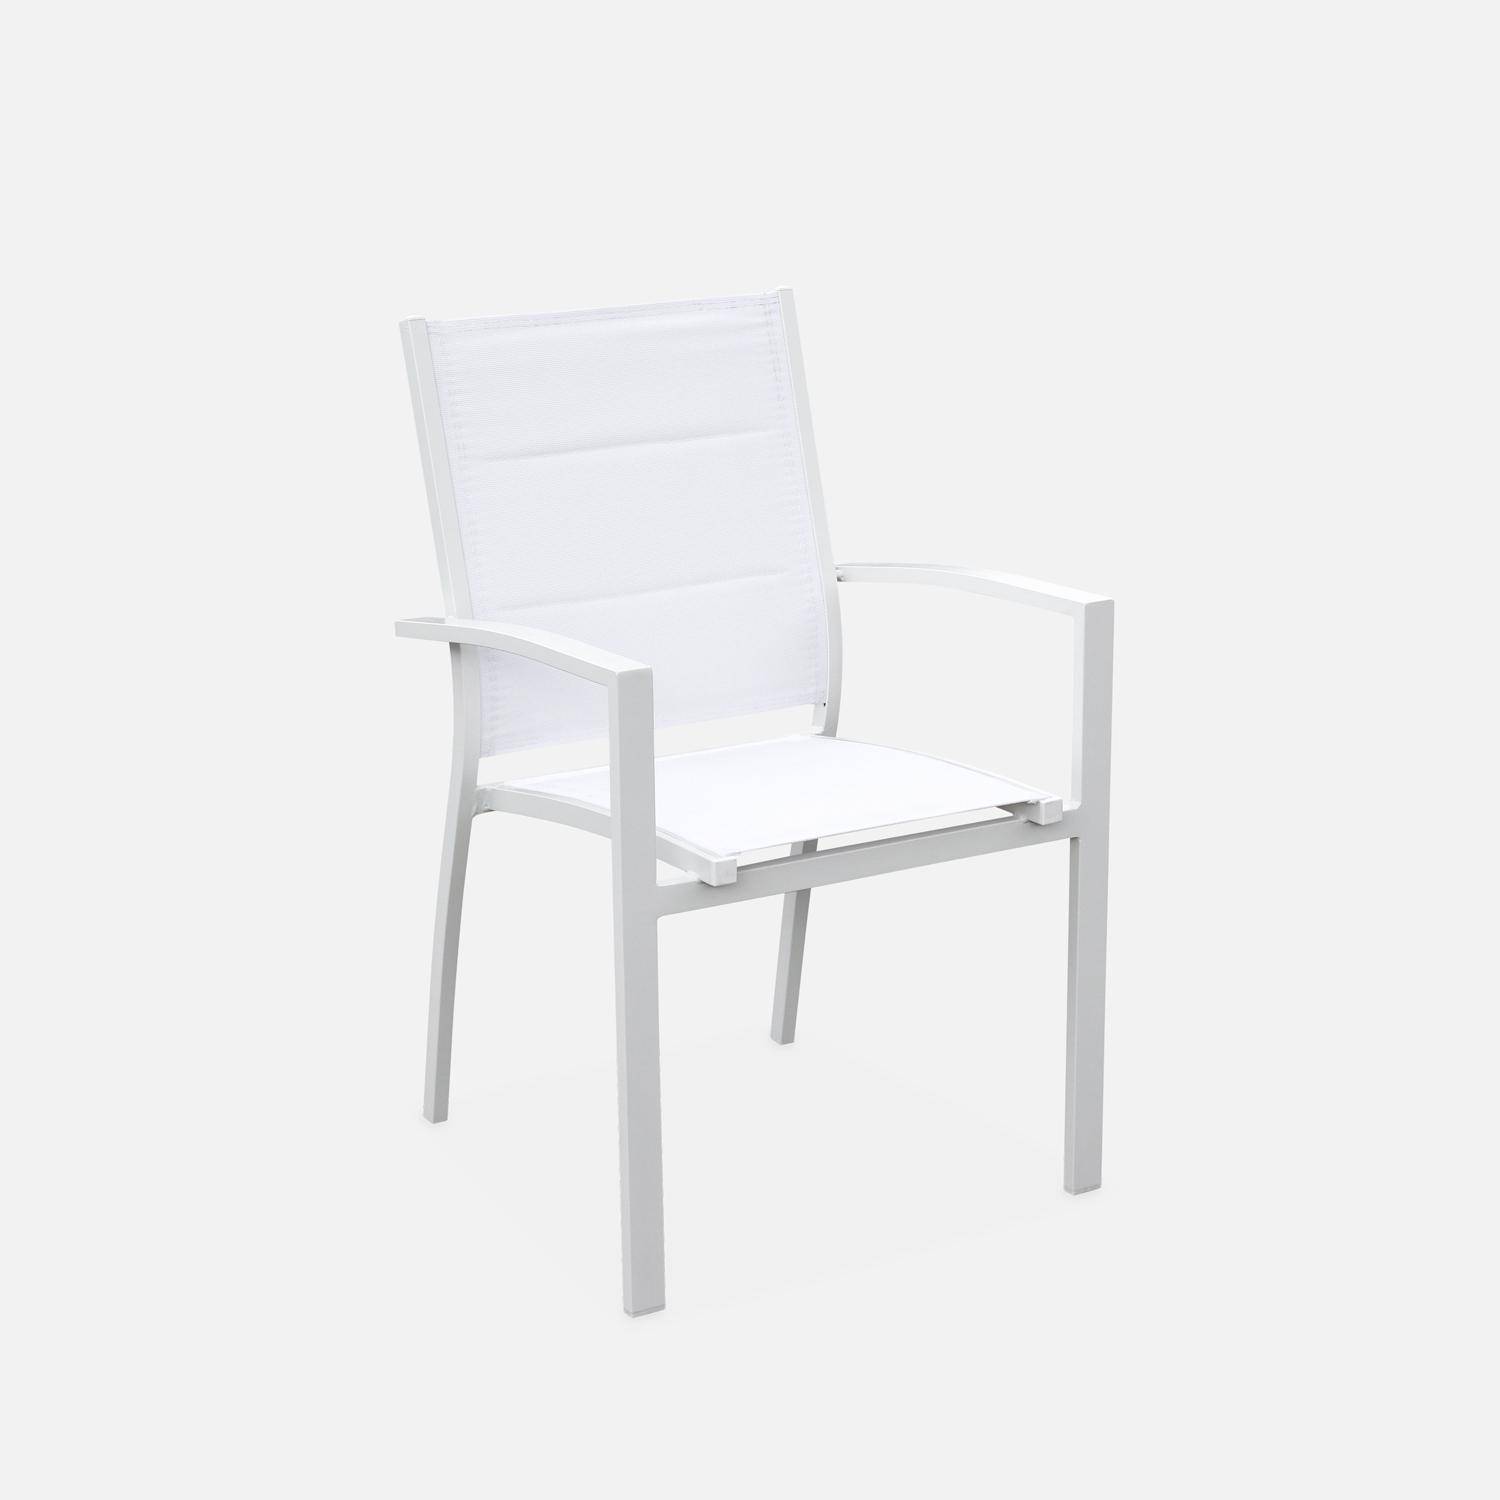 Set da giardino - modello: Chicago, colore: Bianco - Tavolo allungabile in alluminio, dimensioni: 175/245cm con prolunga e 8 sedute in textilene Photo6